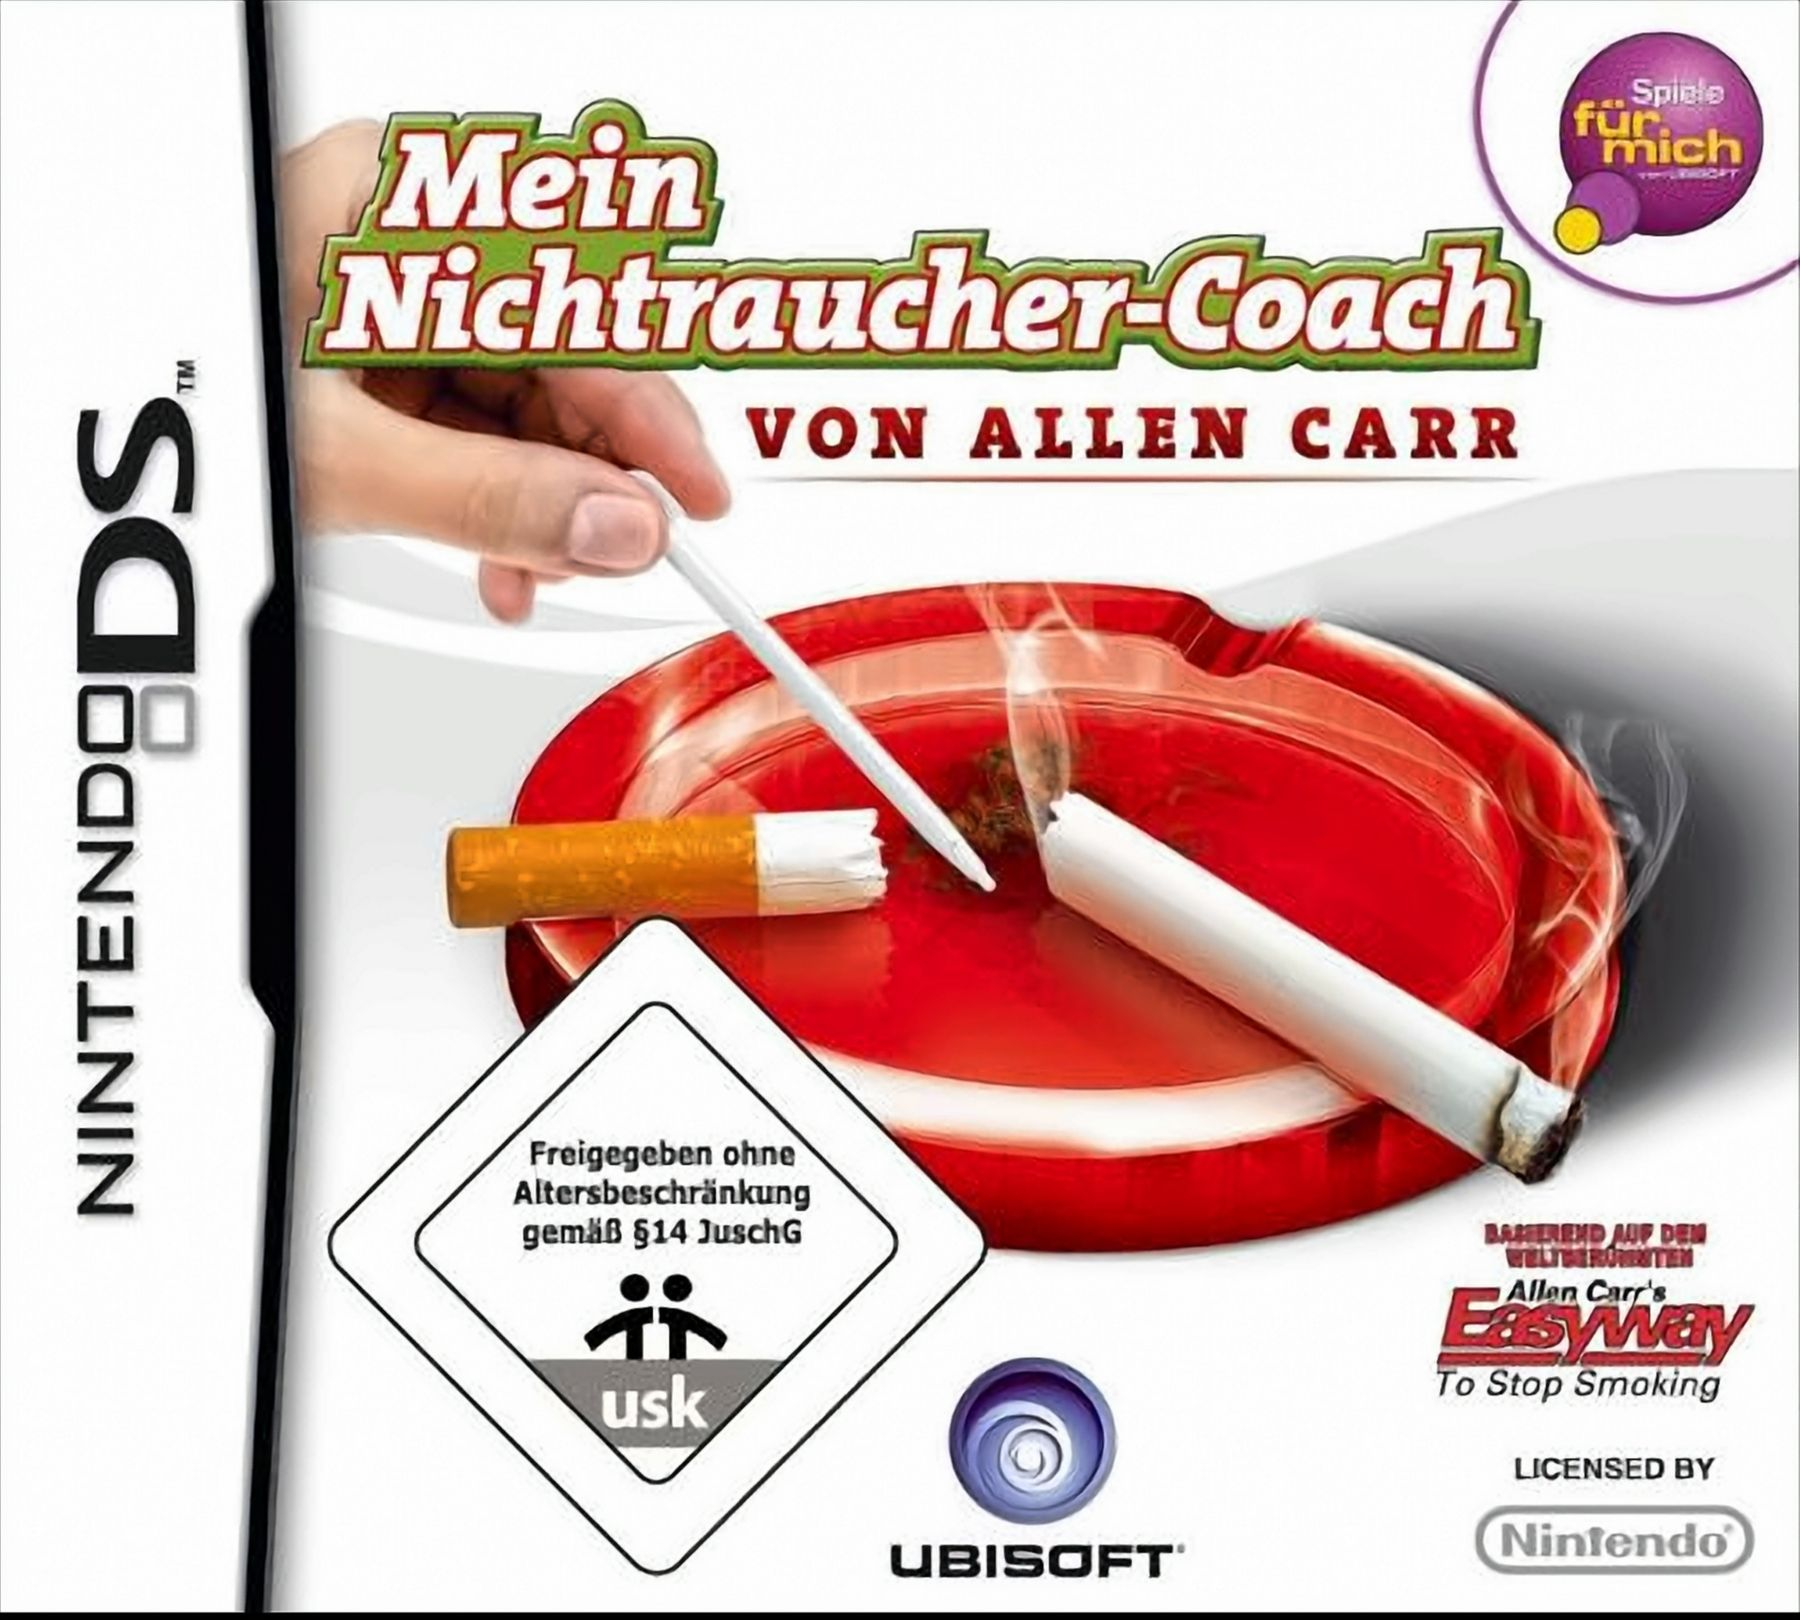 Coach Nichtraucher von Allen DS] Carr Mein - [Nintendo